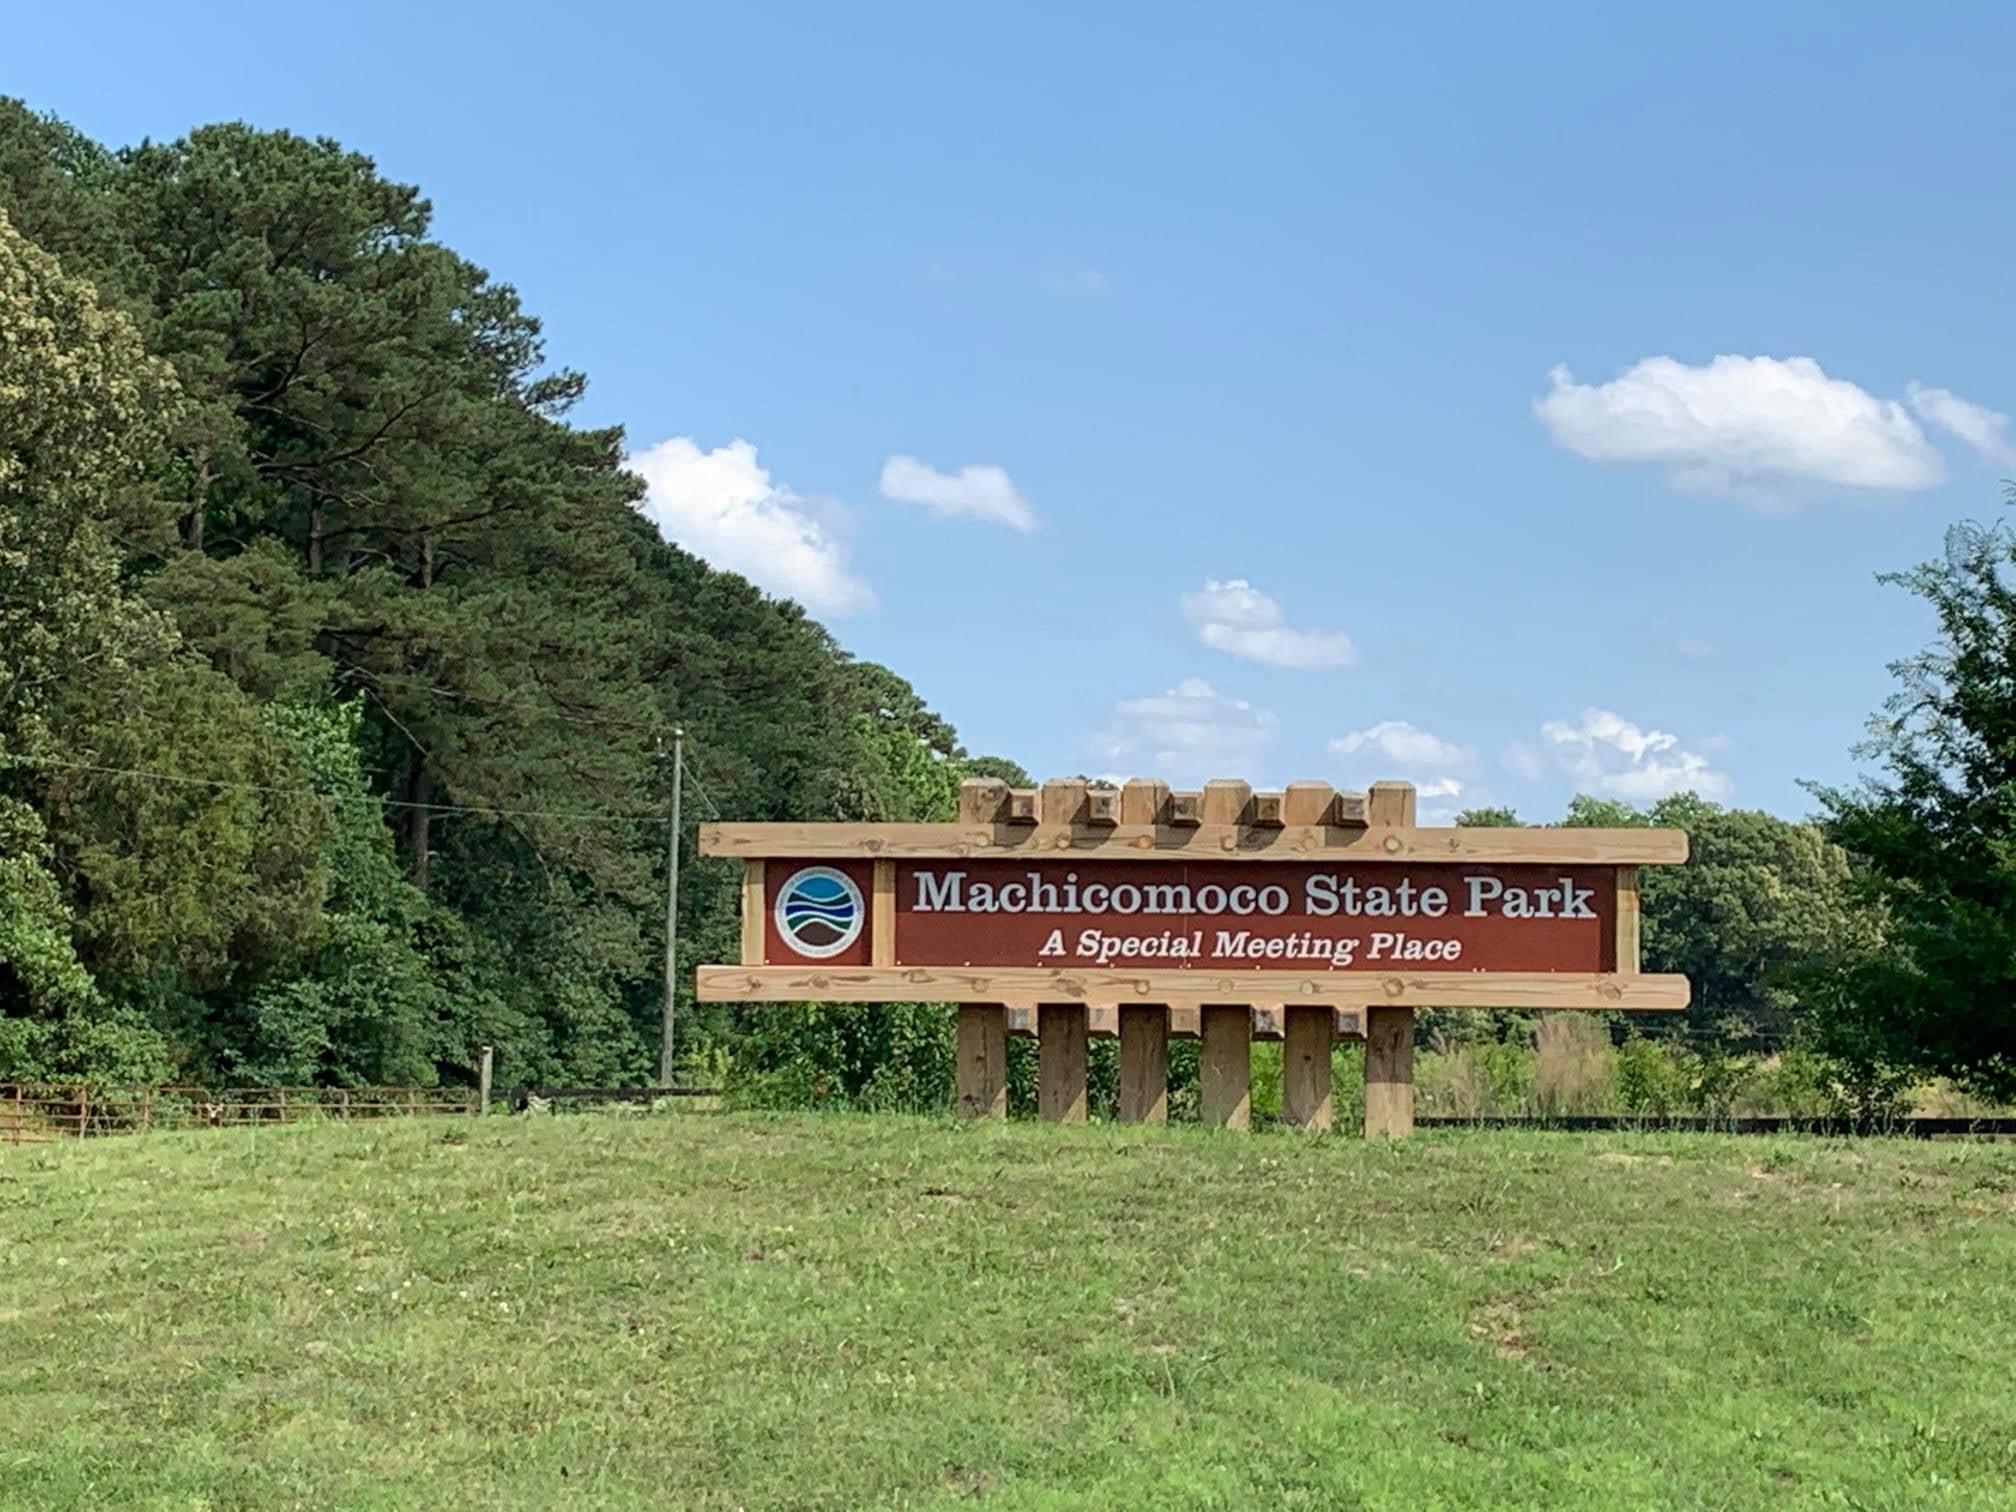 Machicomoco State Park